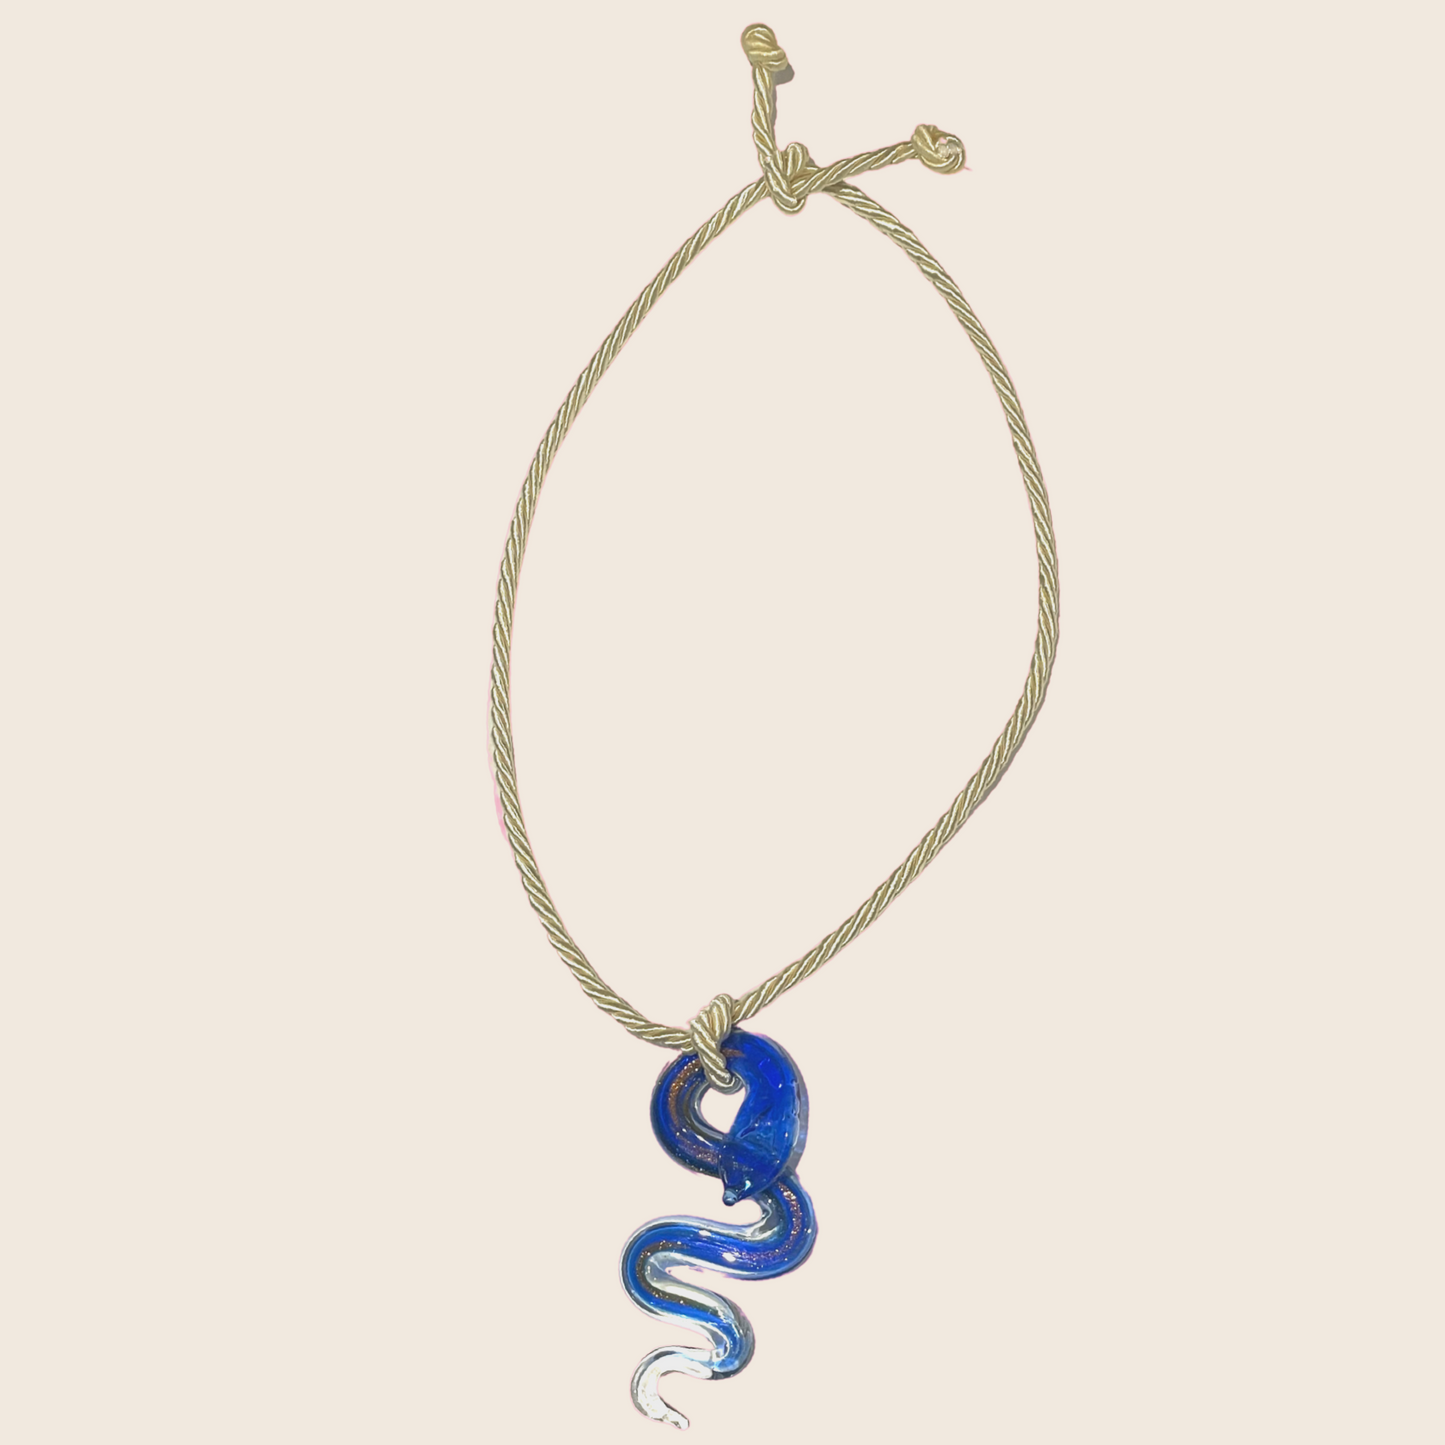 Glass Snake Necklace - Lemon Lua Glass Snake Necklace Lemon Lua Blue / Beige Lemon Lua Glass Snake Necklace Glass Snake Necklace